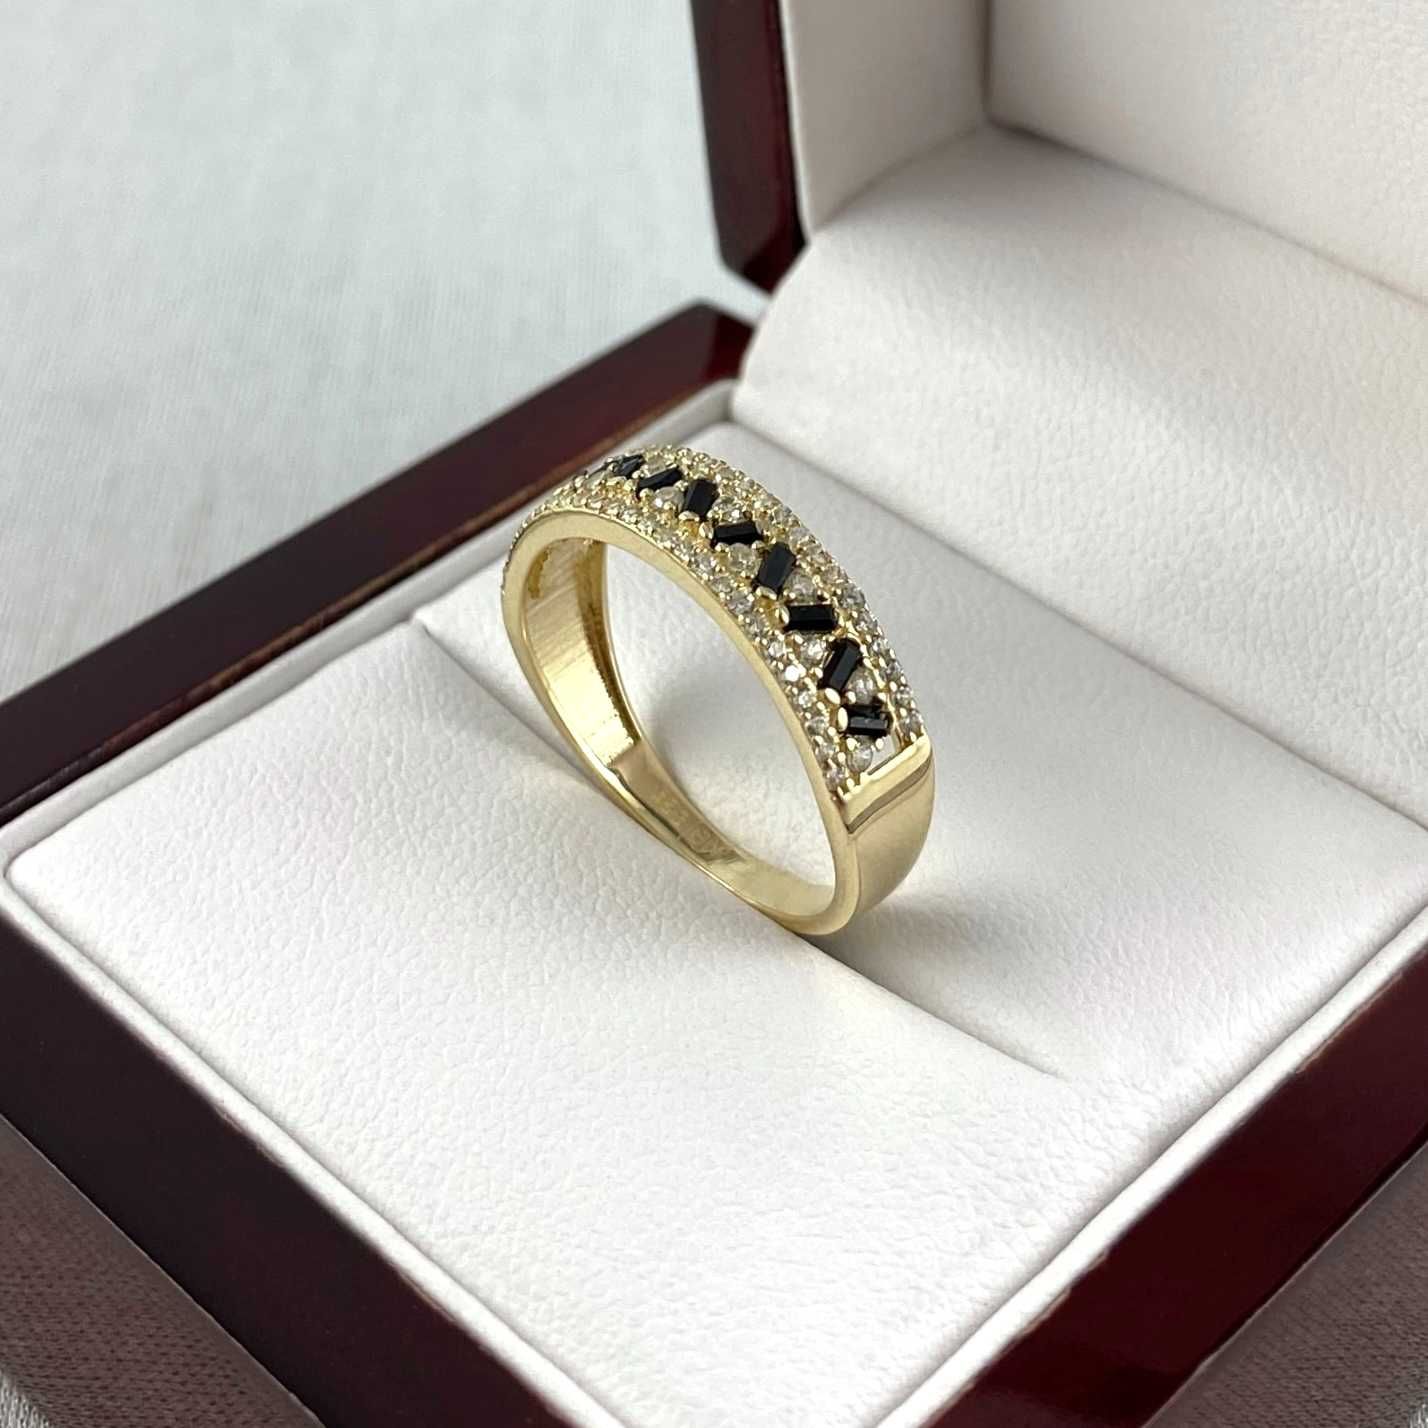 ZŁOTY pierścionek dwa kolory cyrkonii PR. 585 (14K) rozmiar 19